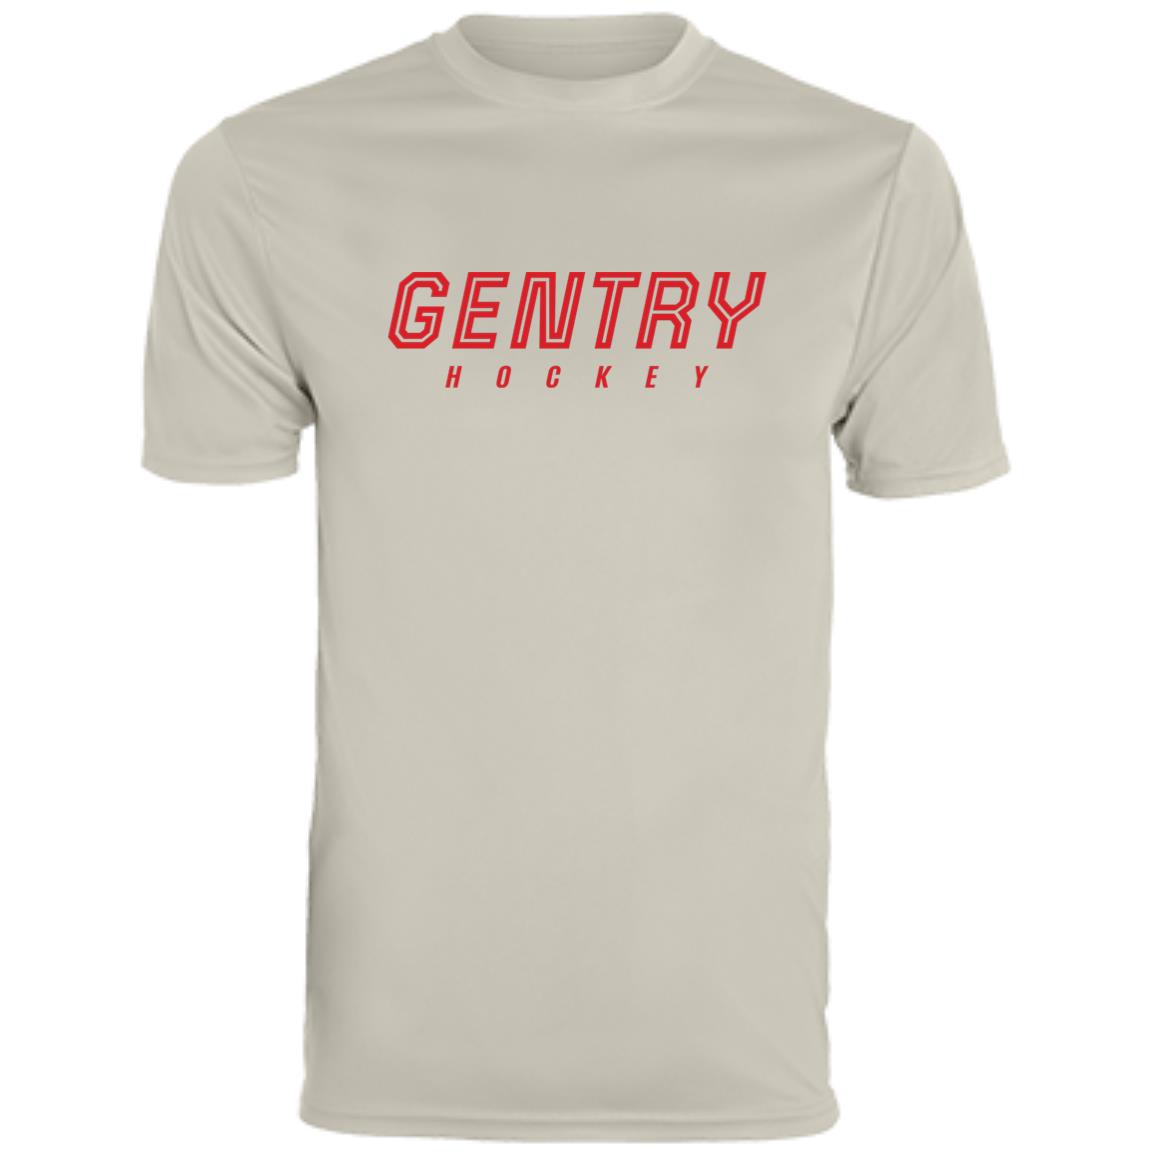 Gentry Hockey Men's Moisture-Wicking Tee